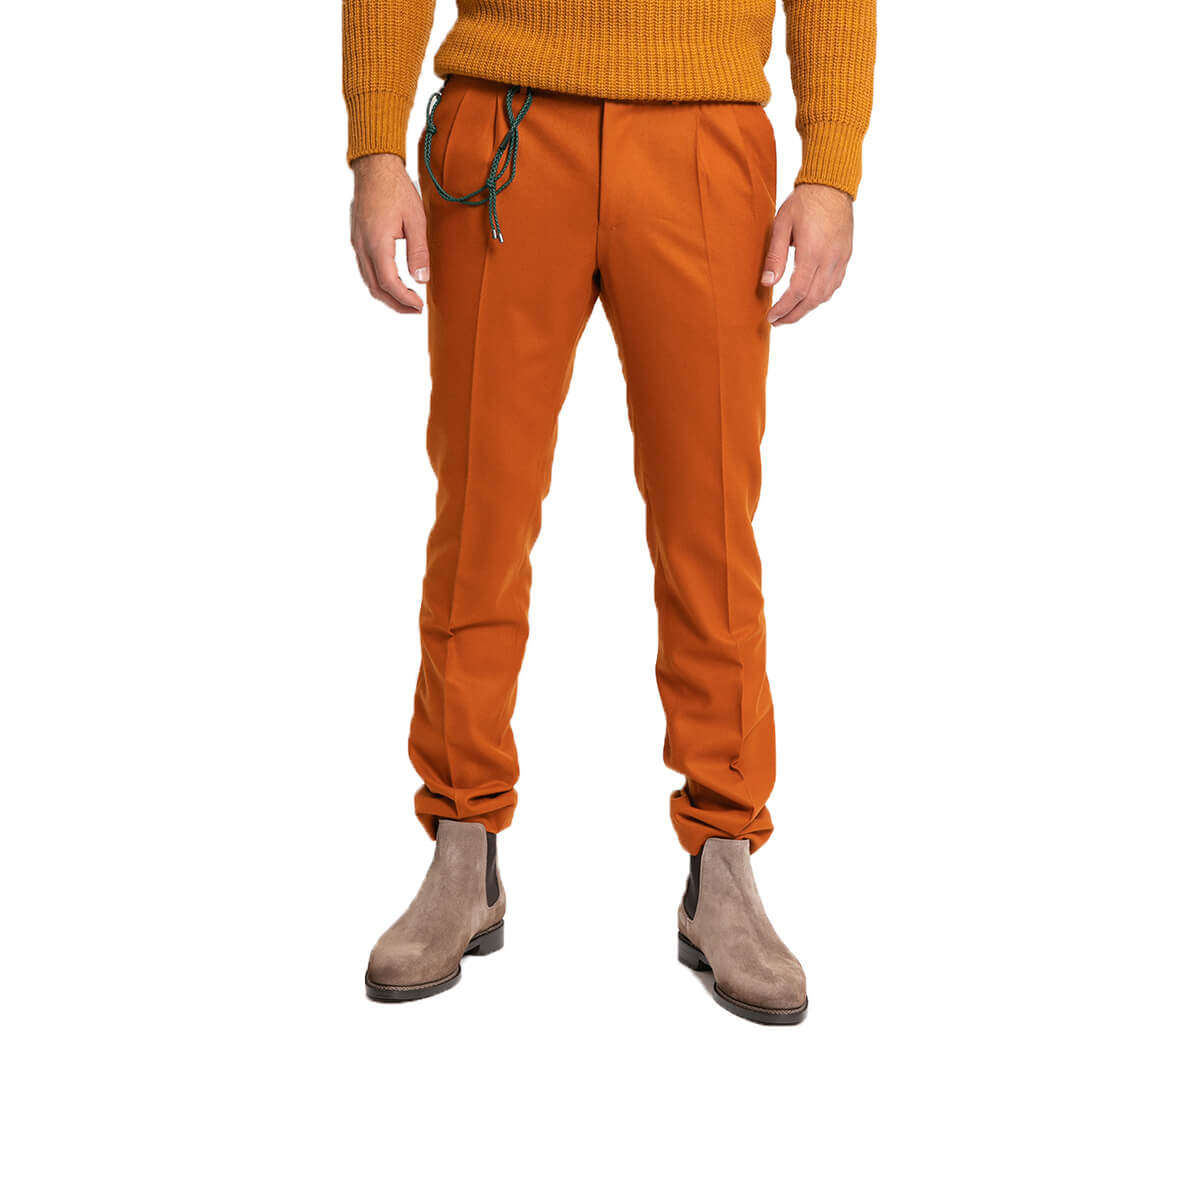 Ανδρικό Πορτοκαλί Raffi Tailored Trousers/Orange BERWICH 121-29245-ORA